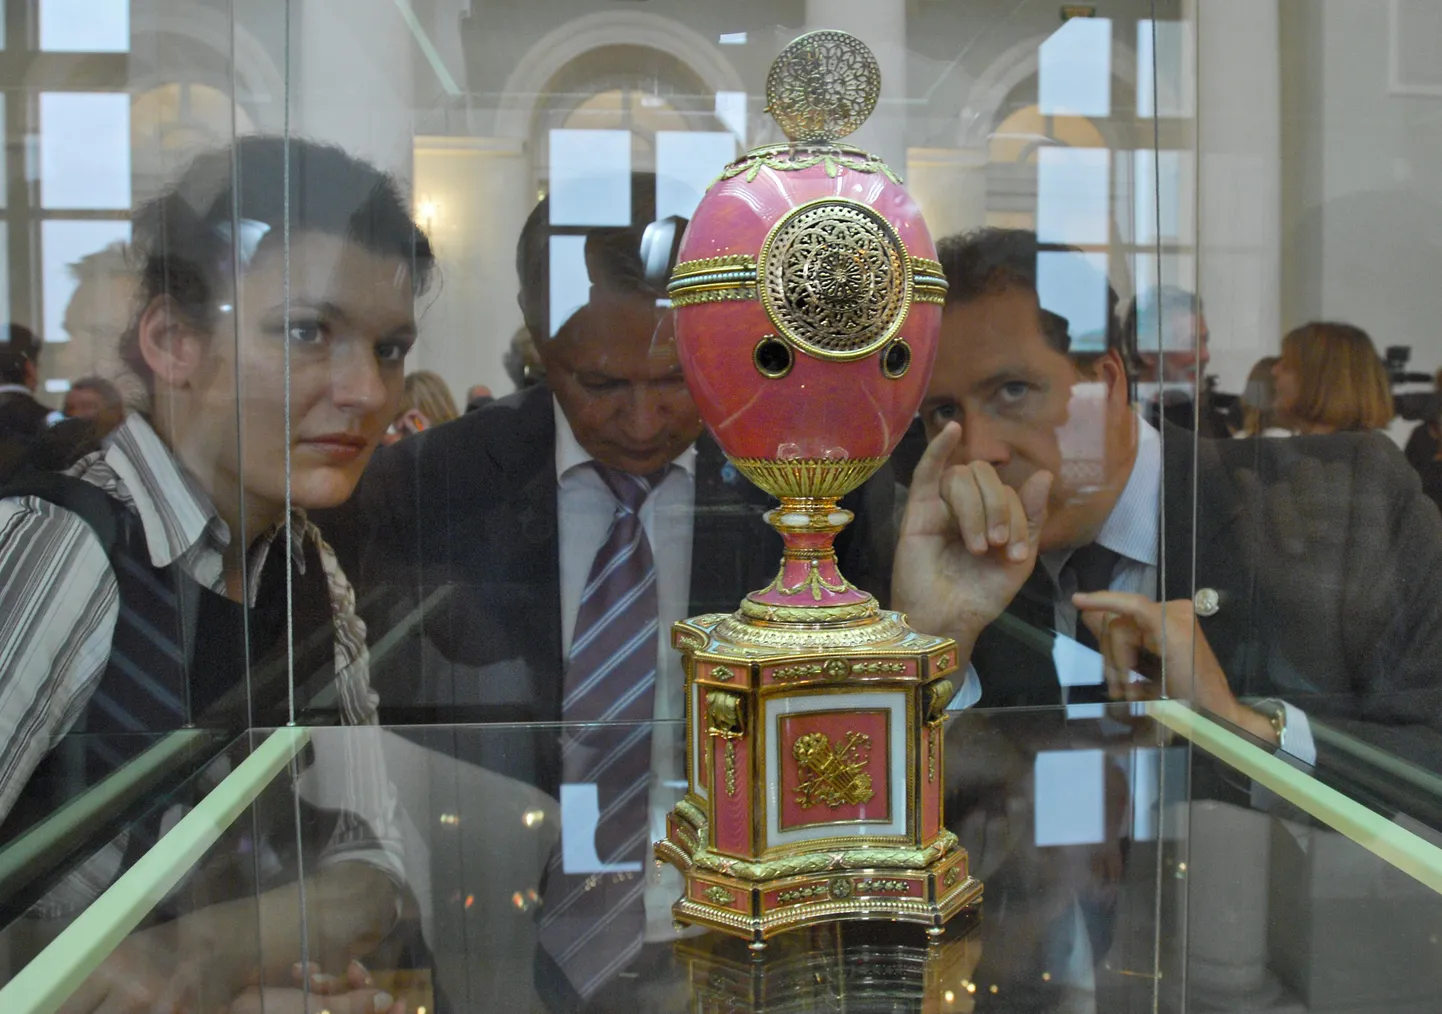 Putin kinkis Ermitaažile Fabergé muna, mille Vene Riiklik muuseum ostis 2007. aastal Londoni maineka oksjonimaja vahendusel.